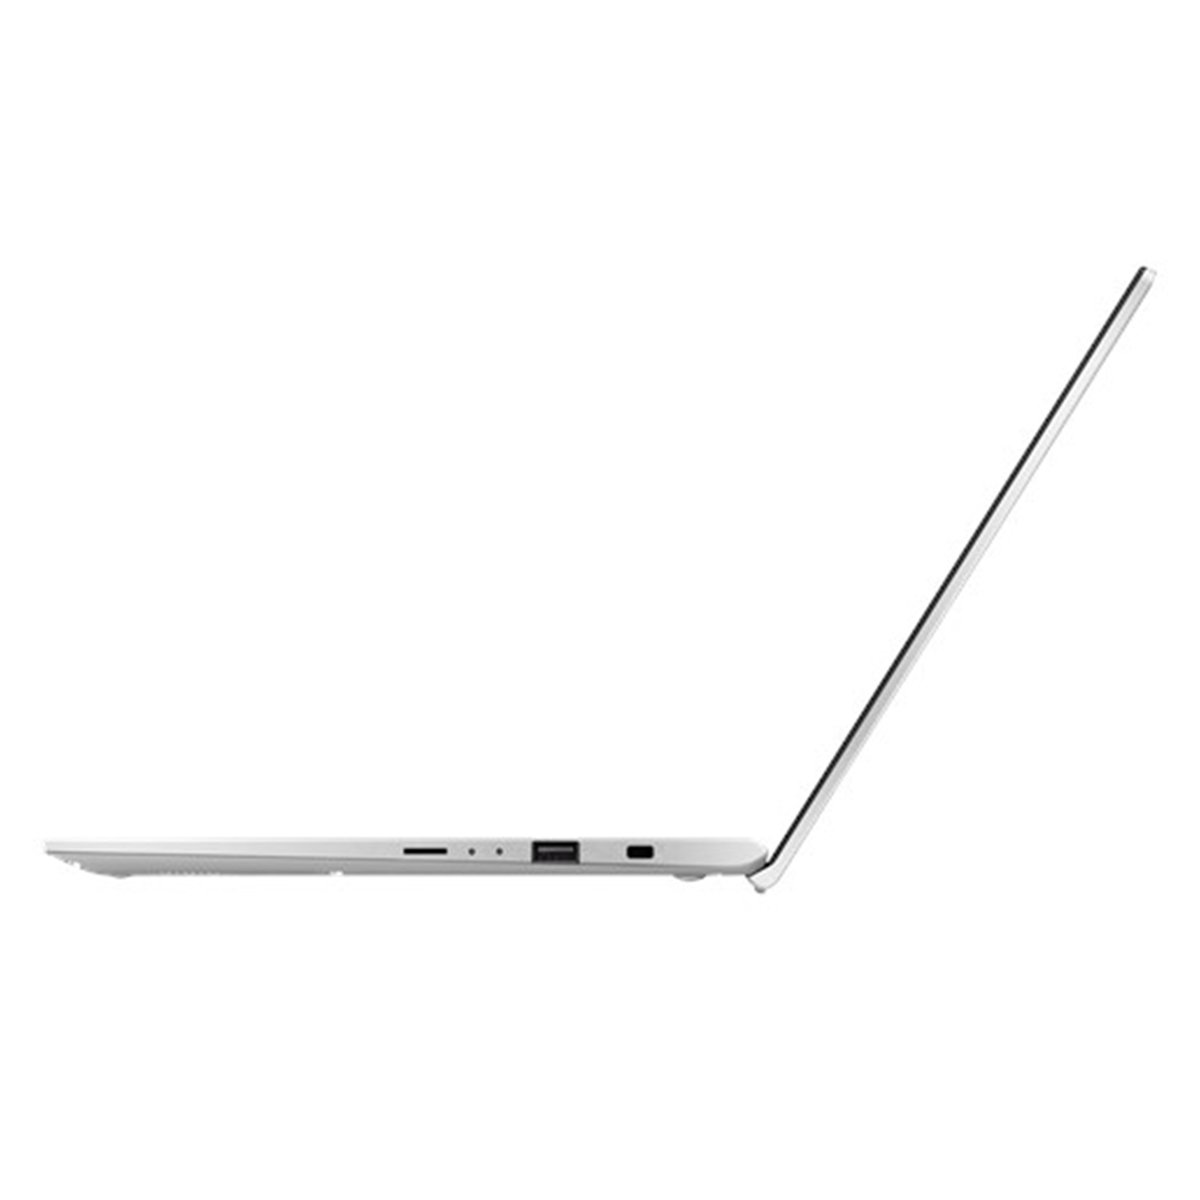 Asus VivoBook A412UB-EK282T Core i5 Silver